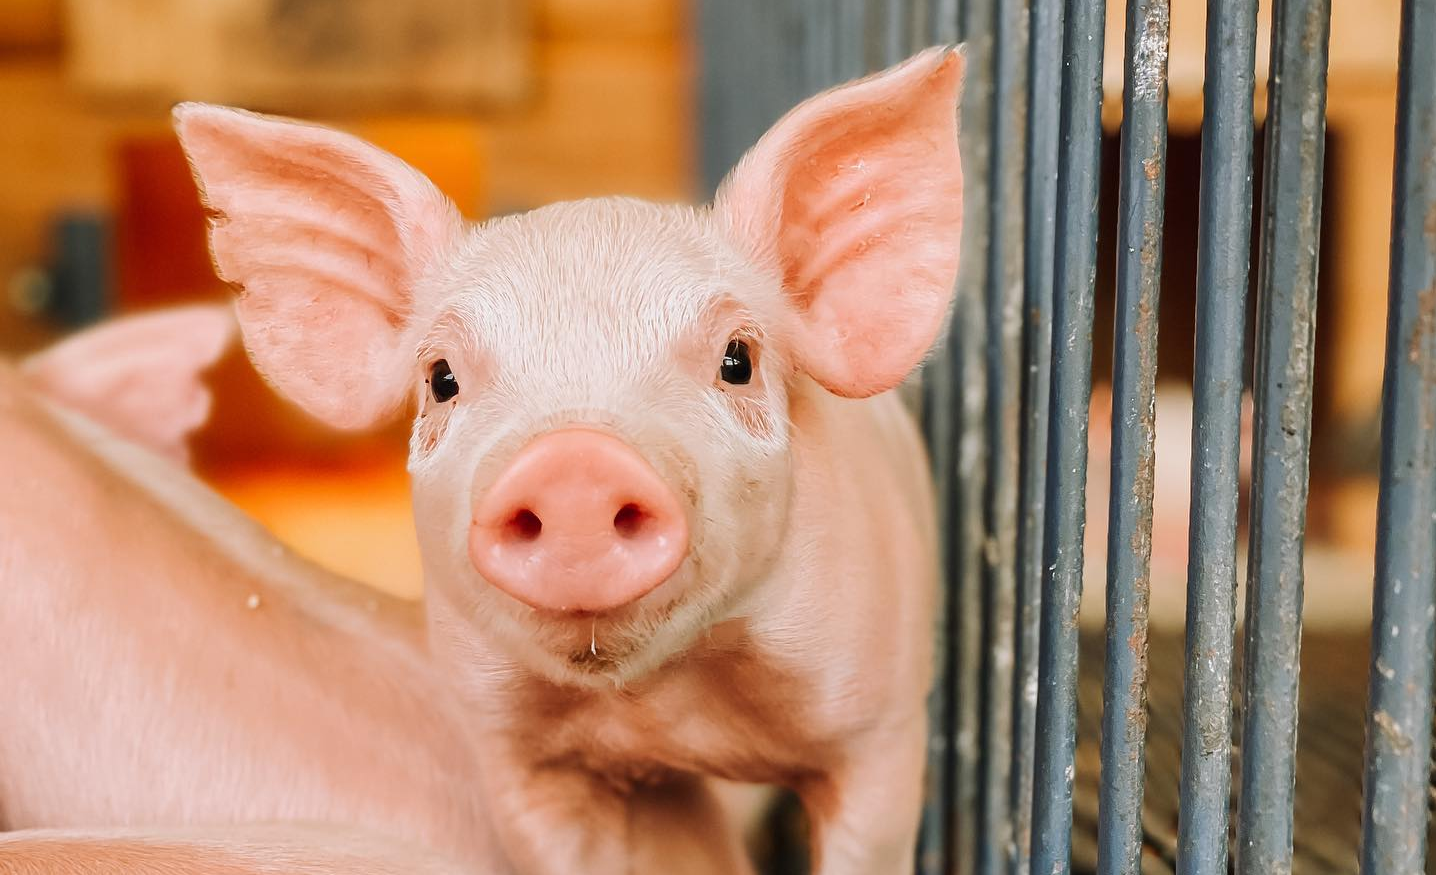 Suinocultura mundial tem encontro no Pork 20 anos